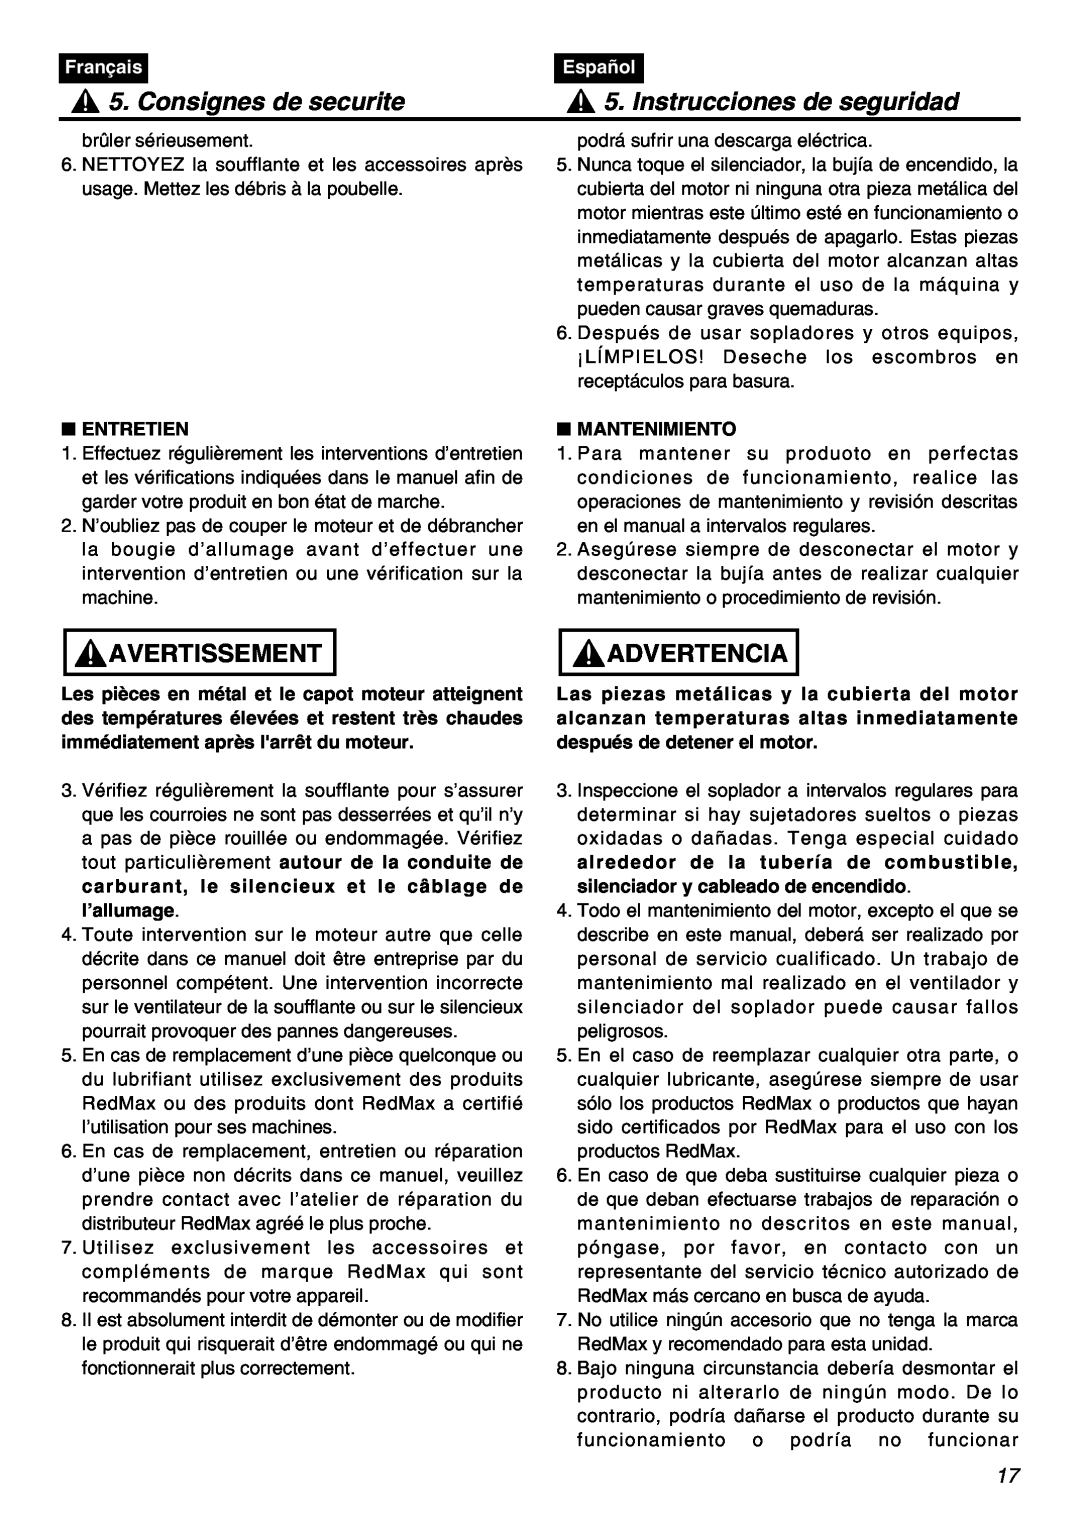 RedMax HBZ2601 Consignes de securite, Instrucciones de seguridad, Avertissement, Advertencia, Français, Español, Entretien 